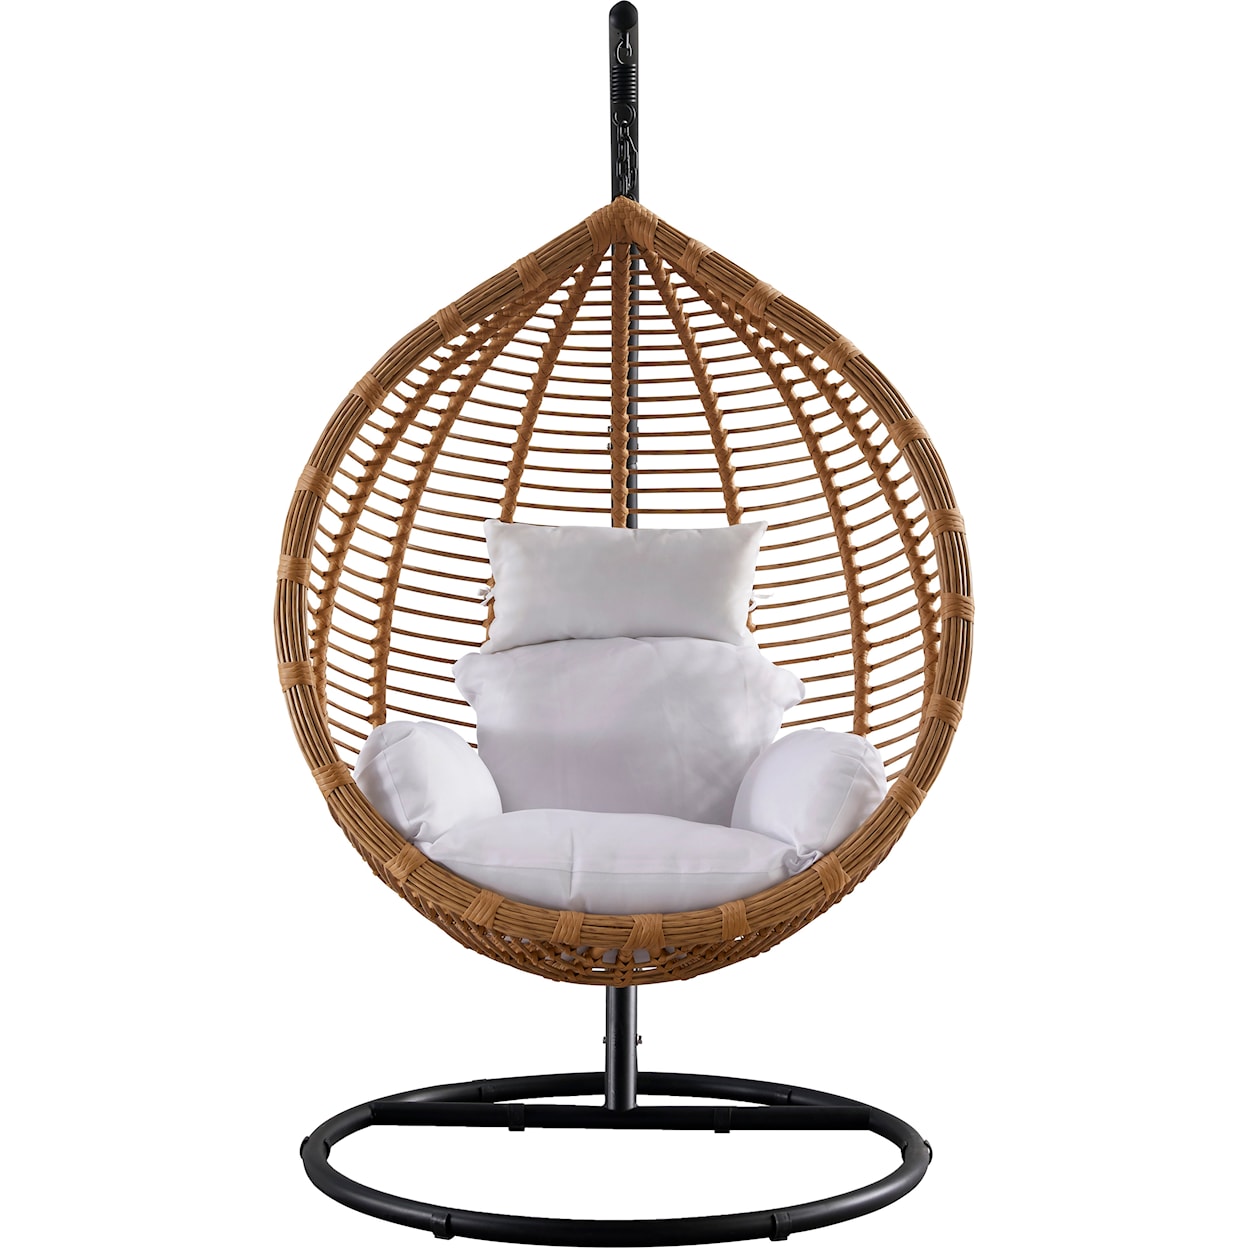 Meridian Furniture Tarzan Swing Chair